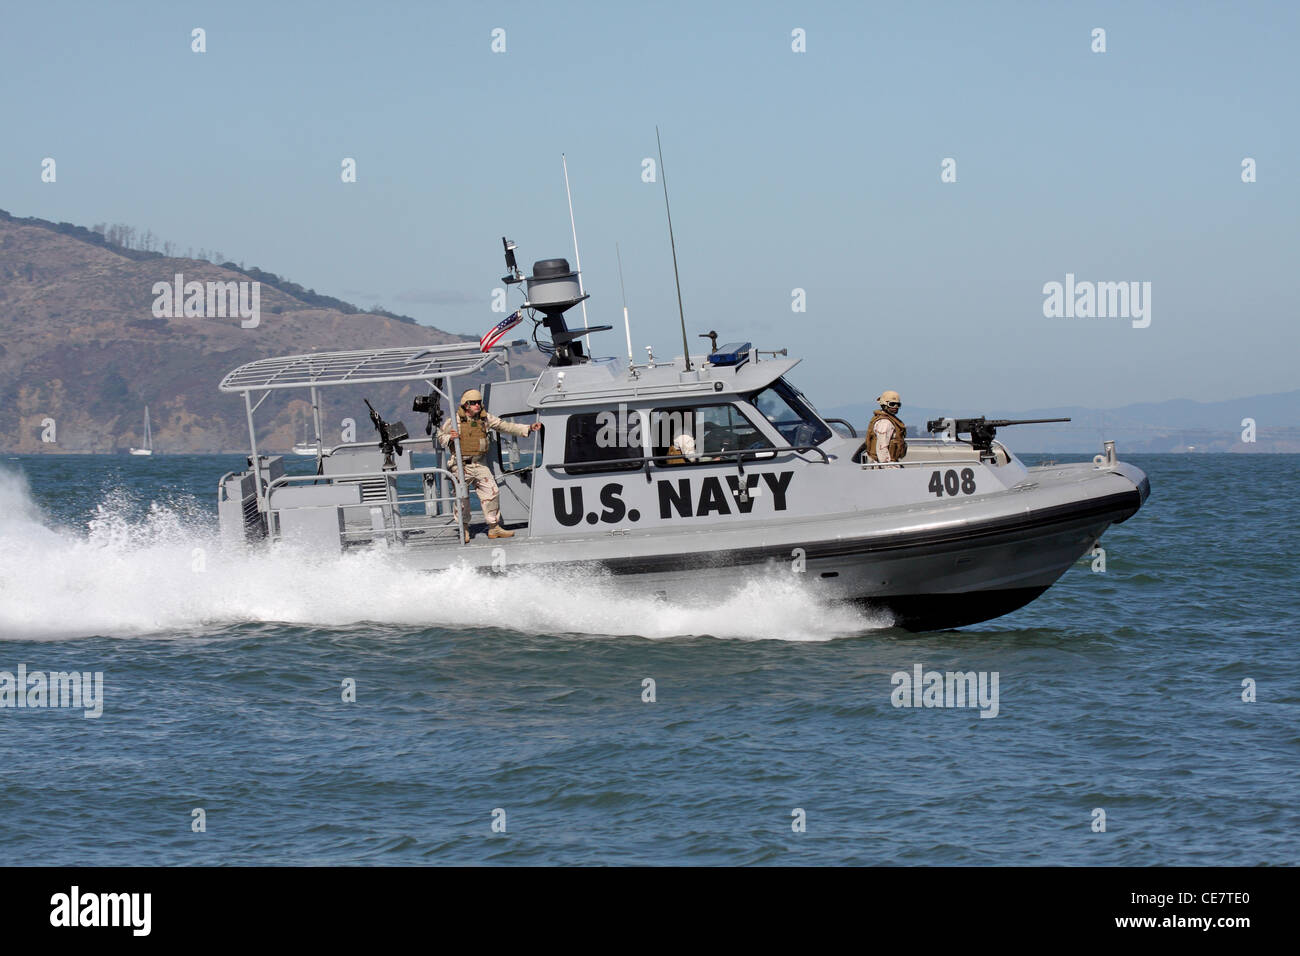 La Marine américaine patrouille des forces de sécurité le front de mer de San Francisco dans un 34 pied arche mer Bateau de sécurité de la Marine. Banque D'Images